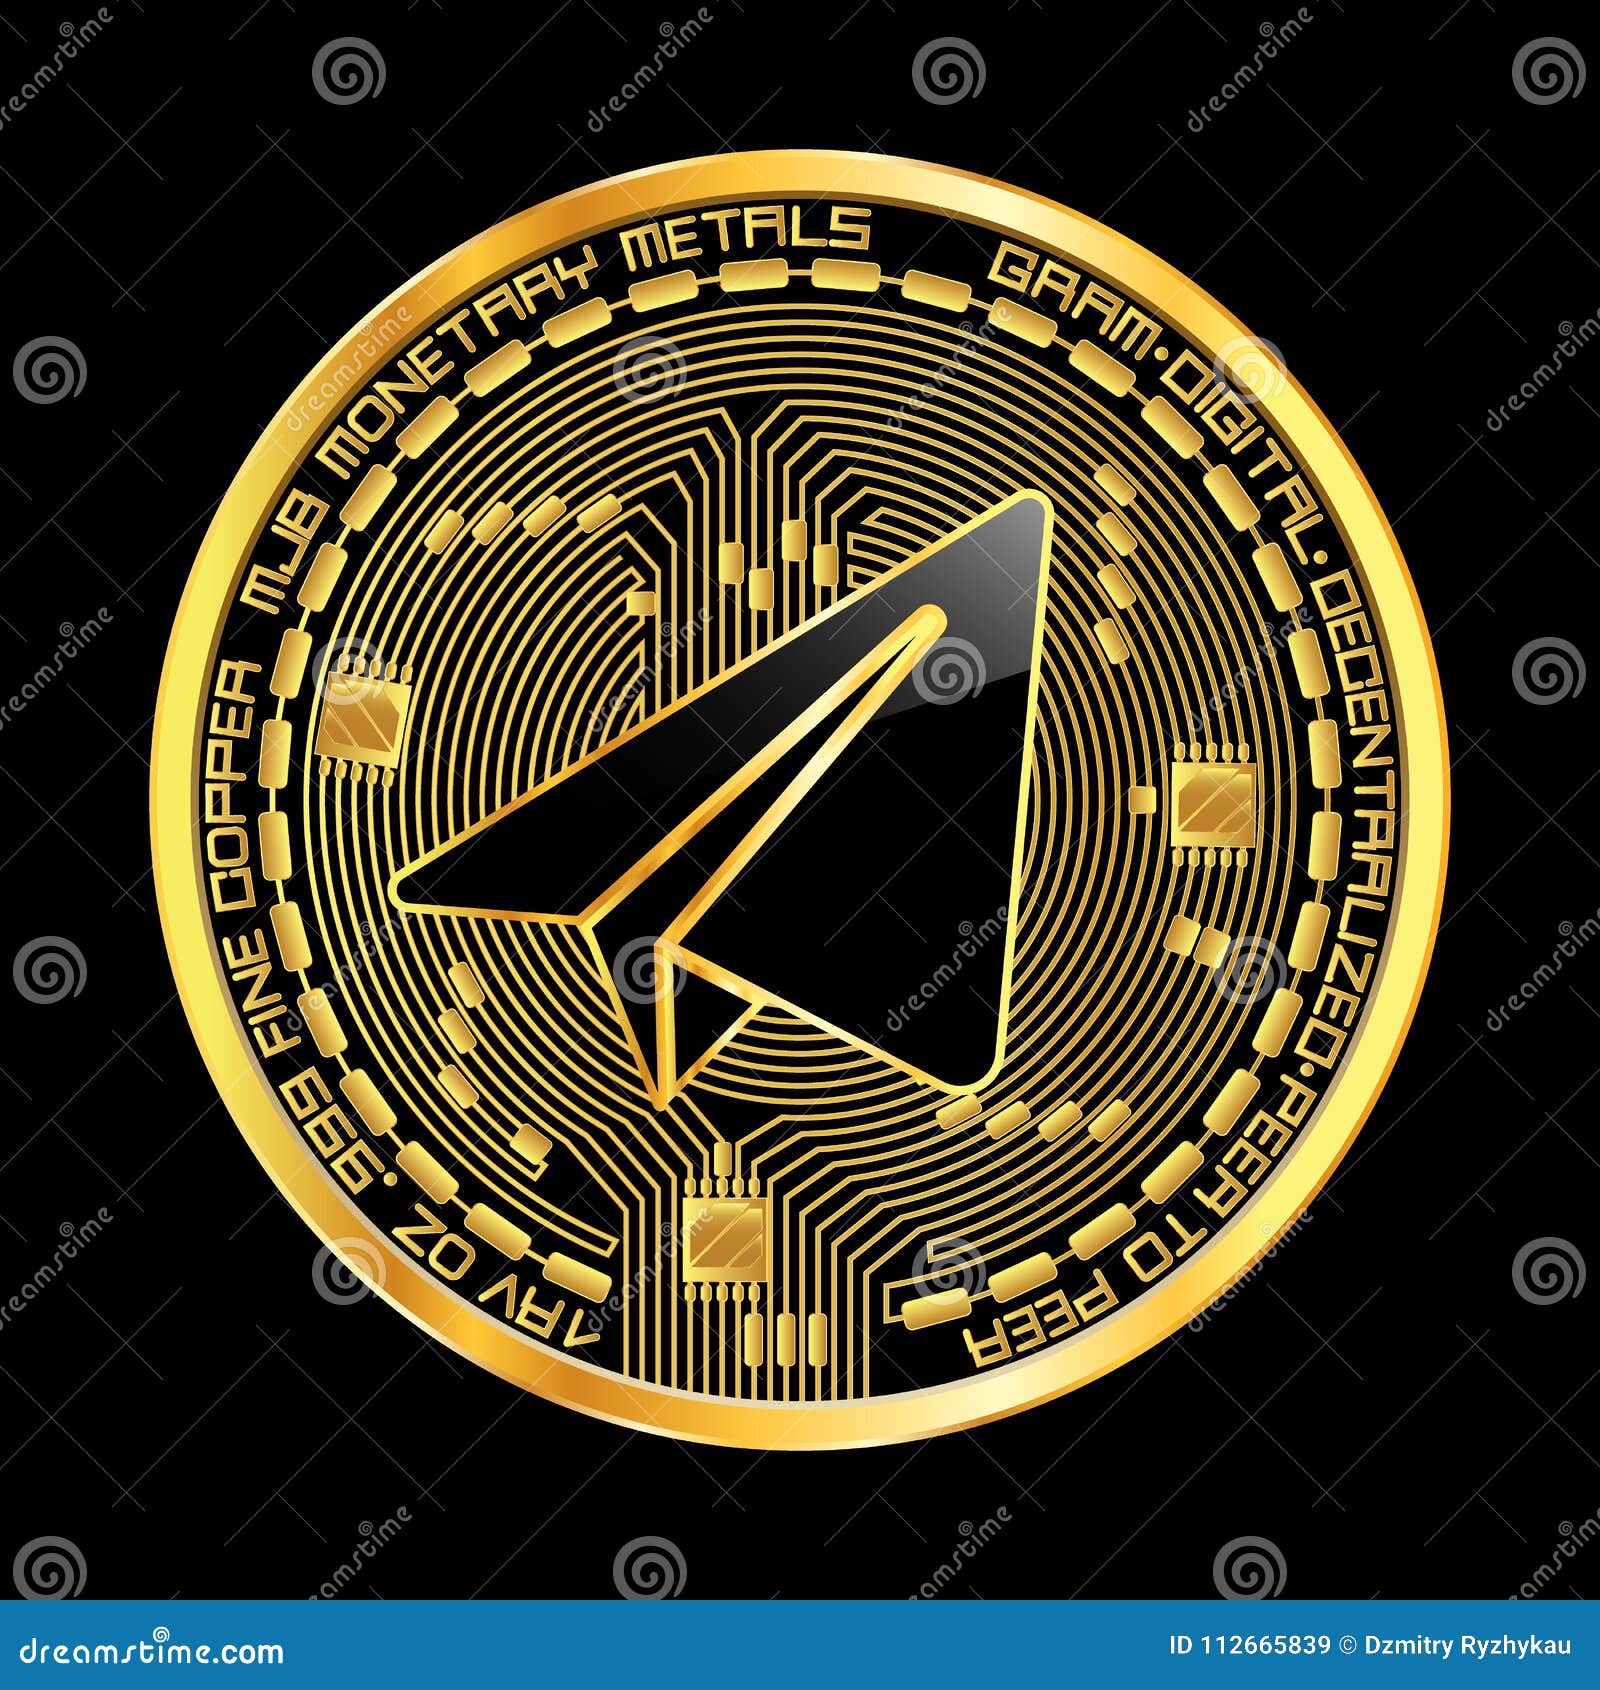 gram crypto coin)